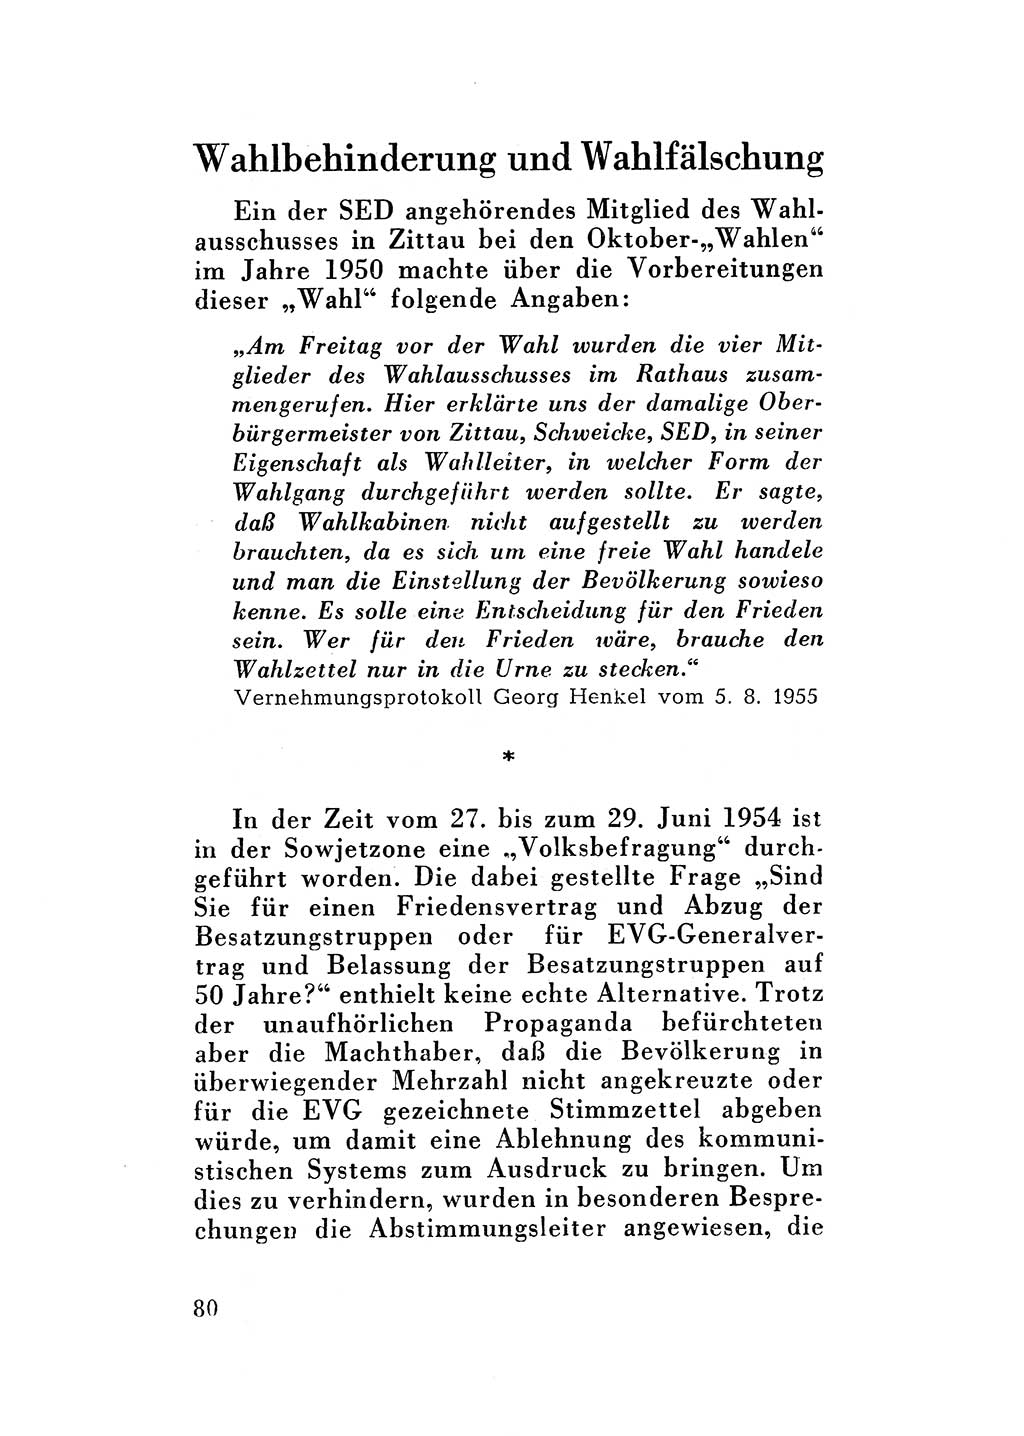 Katalog des Unrechts, Untersuchungsausschuß Freiheitlicher Juristen (UfJ) [Bundesrepublik Deutschland (BRD)] 1956, Seite 80 (Kat. UnR. UfJ BRD 1956, S. 80)